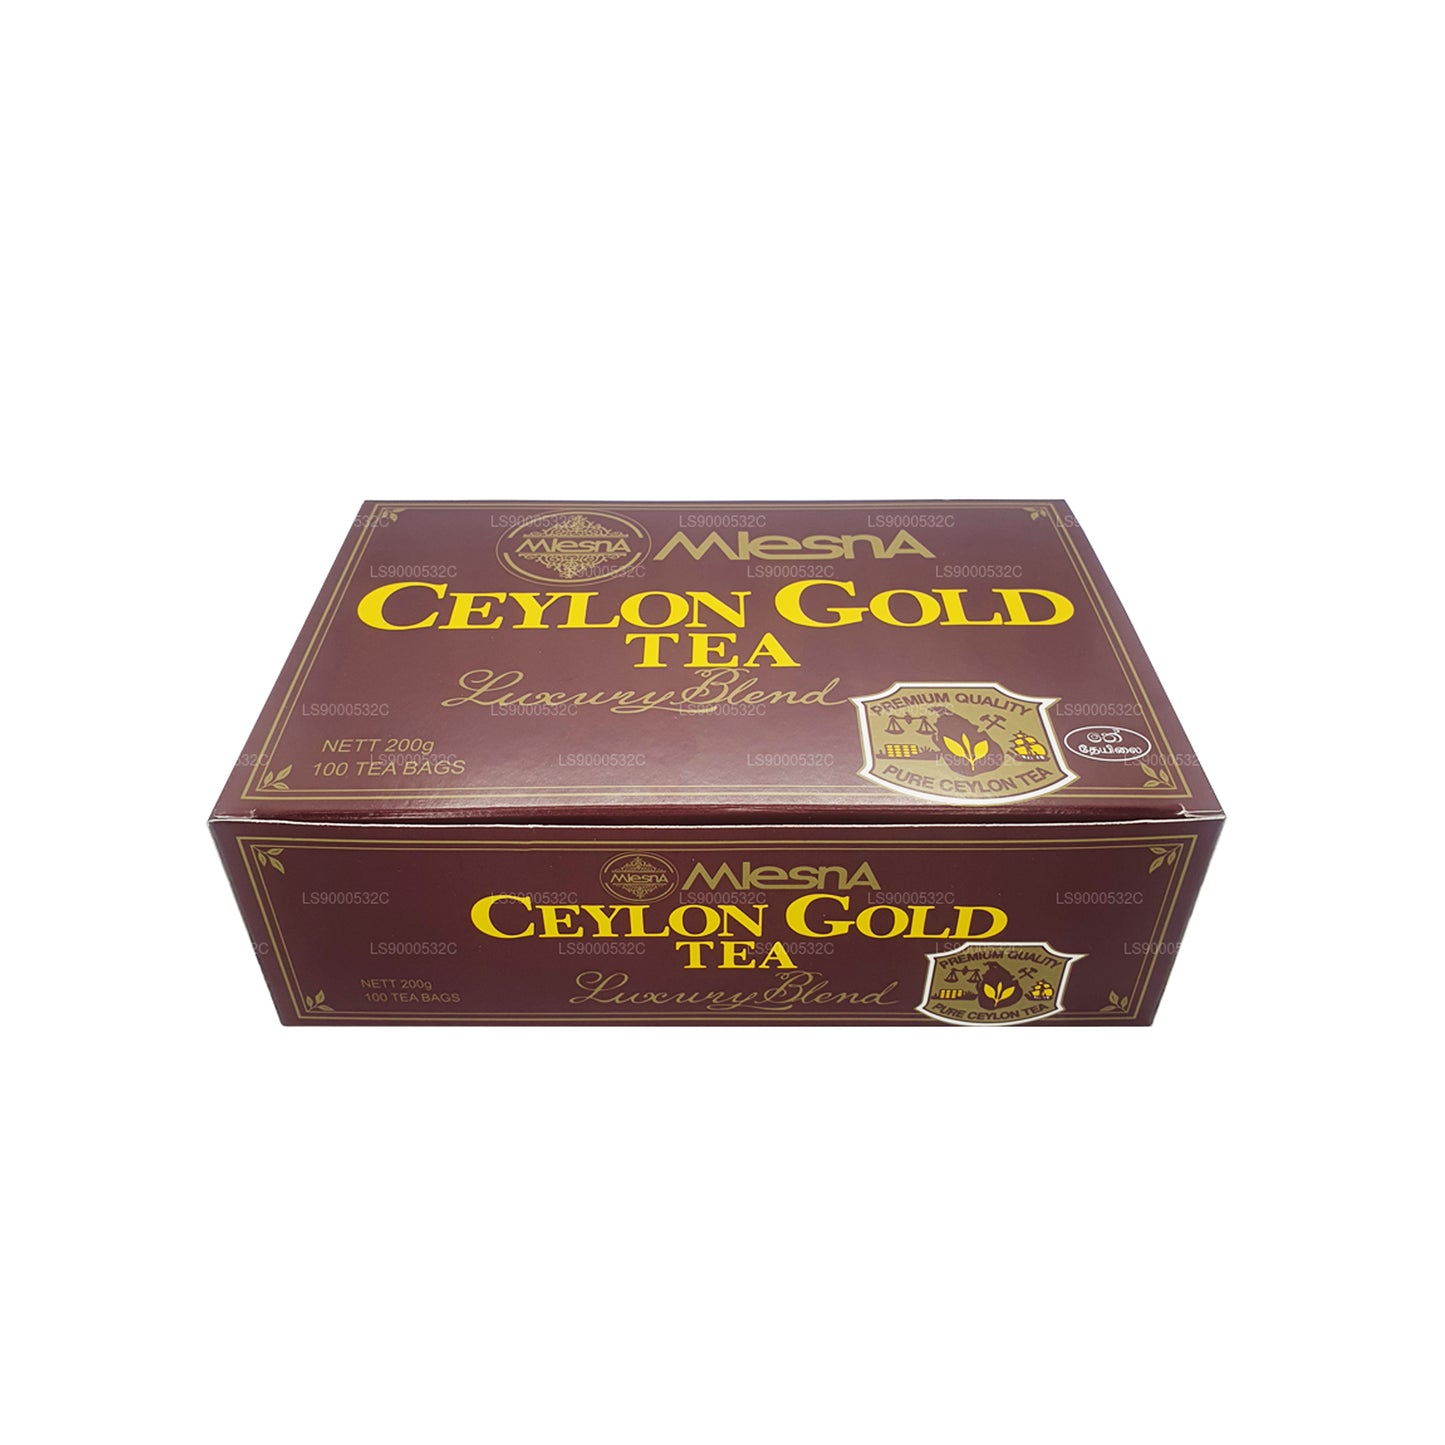 Cadena y etiqueta Mlesna Tea Ceylon Gold, 100 bolsitas de té (200 g)